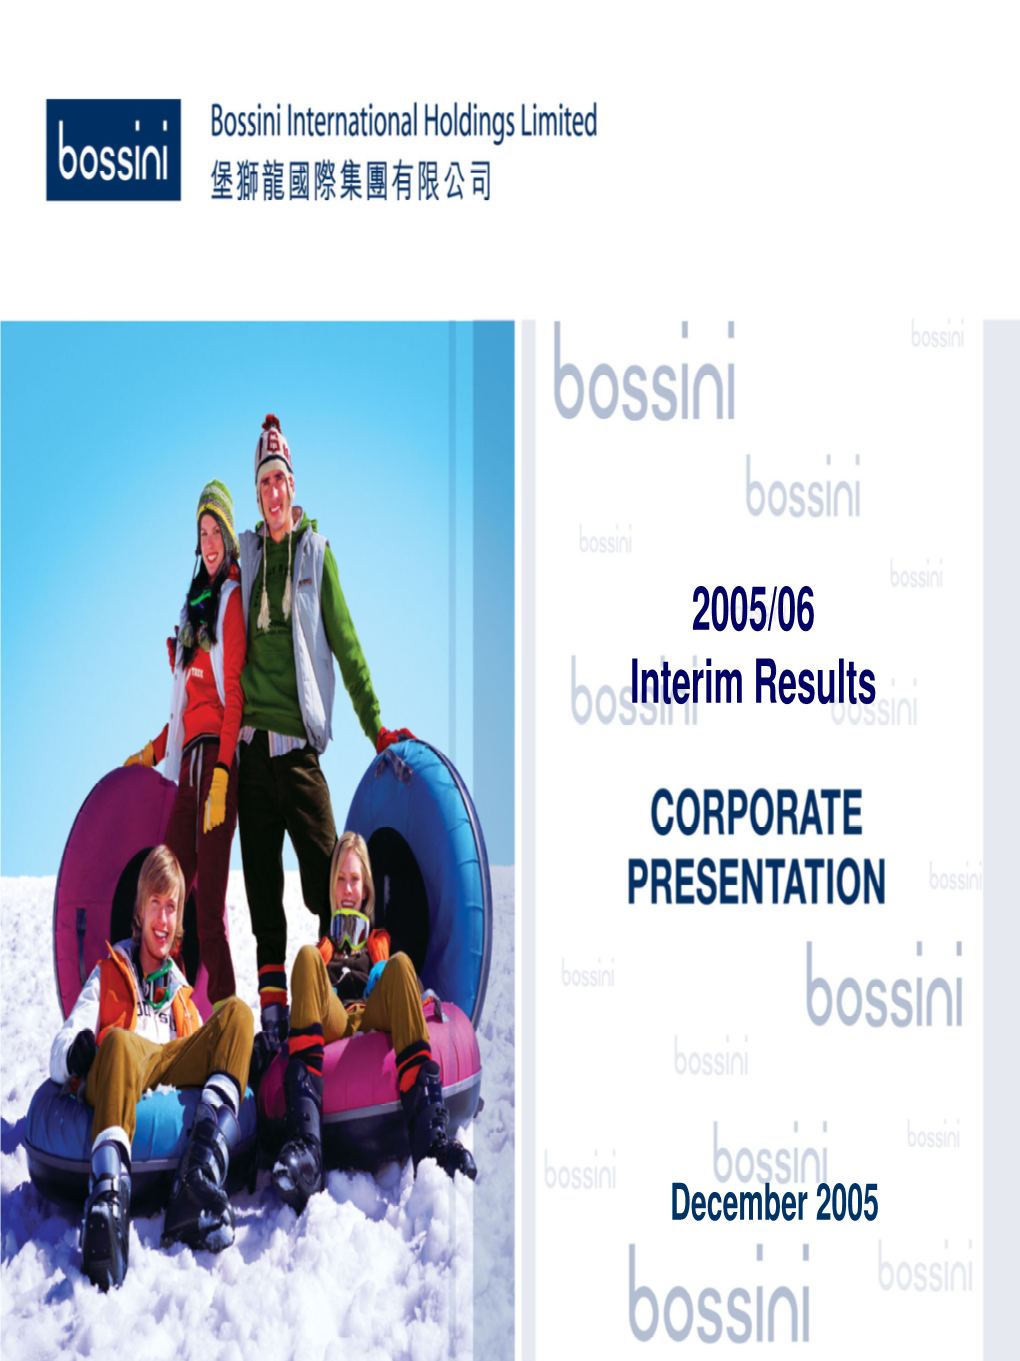 Bossini International Holdings Limited